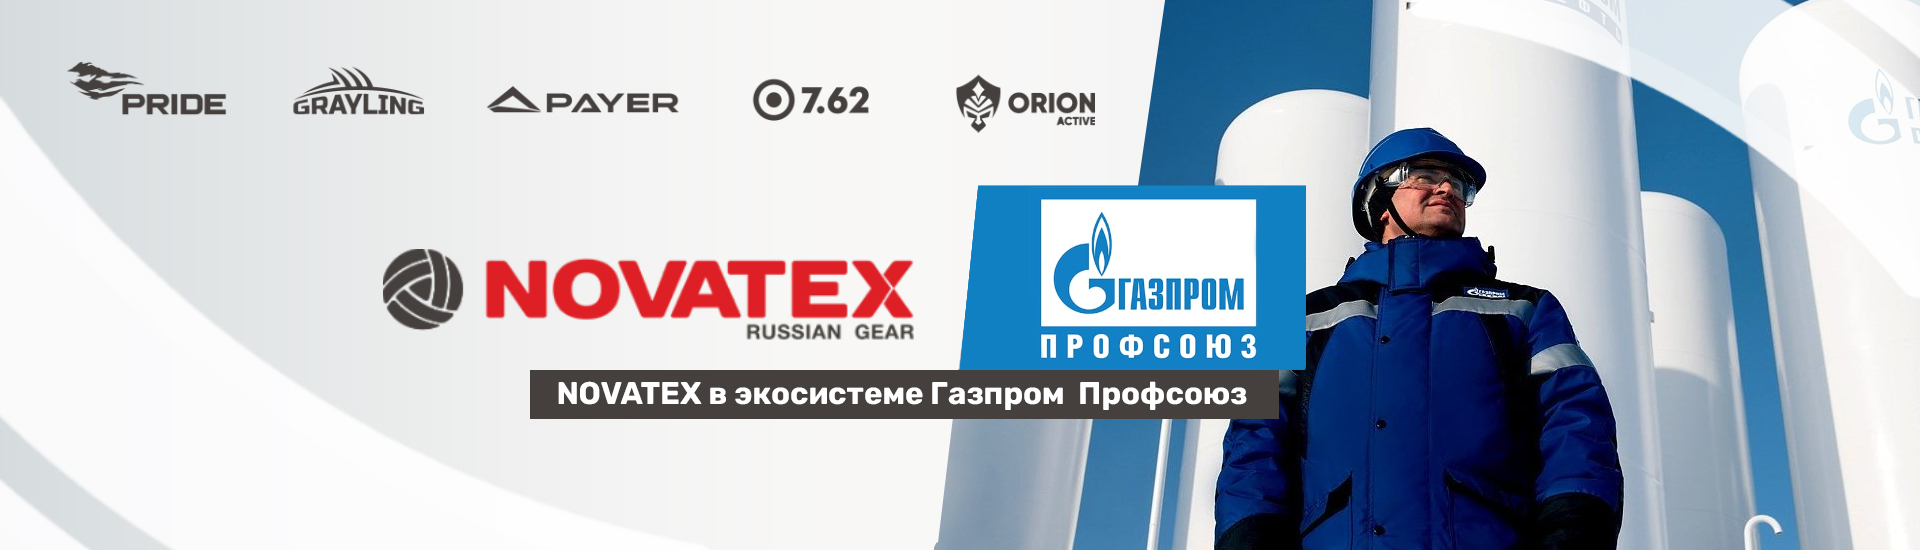 Novatex будет поставлять экипировку сотрудникам «Газпрома»